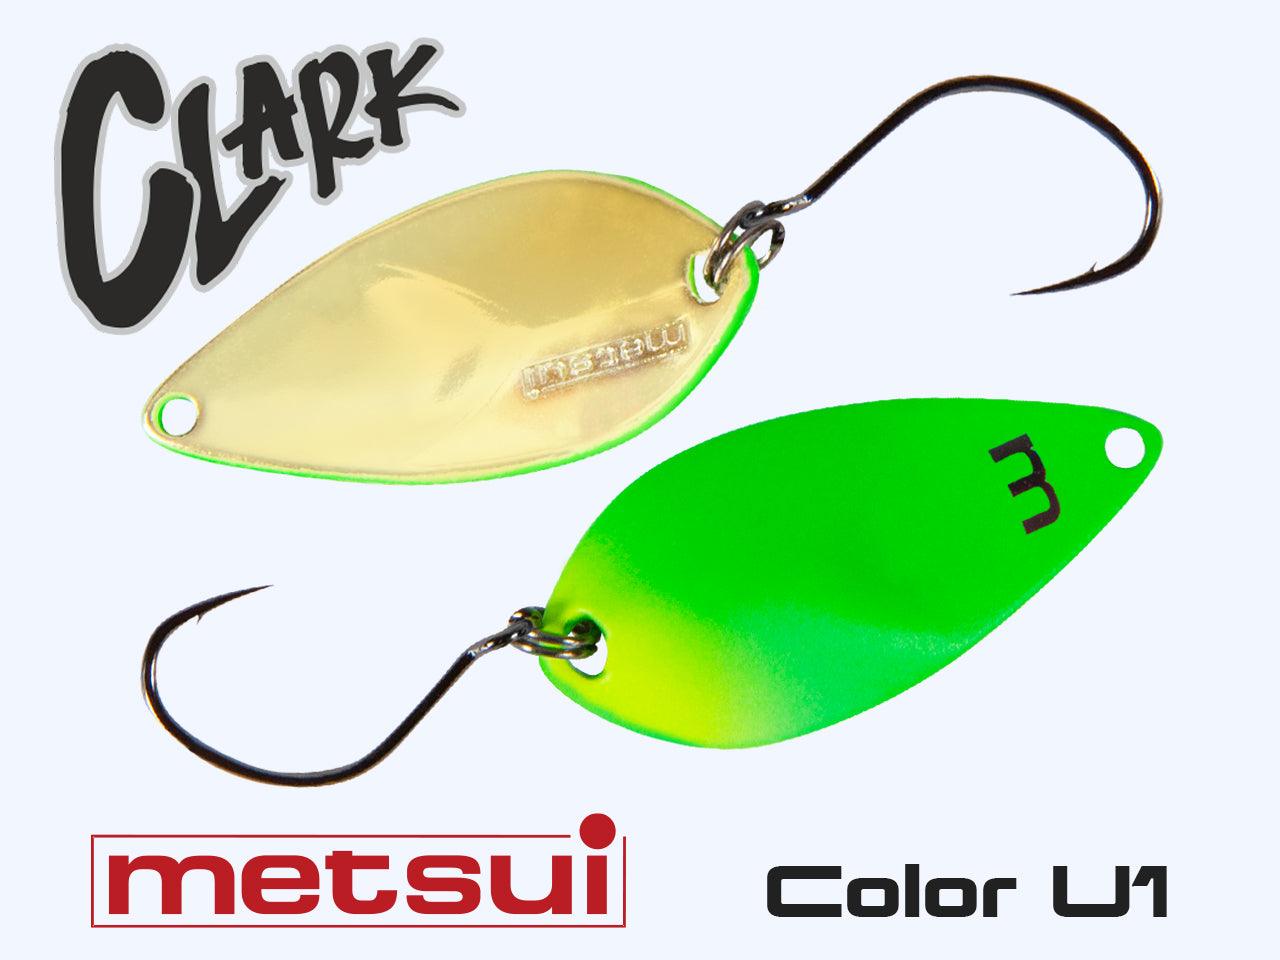 Zemex Mestsui CLARK 3.3 g - SP-Fishing